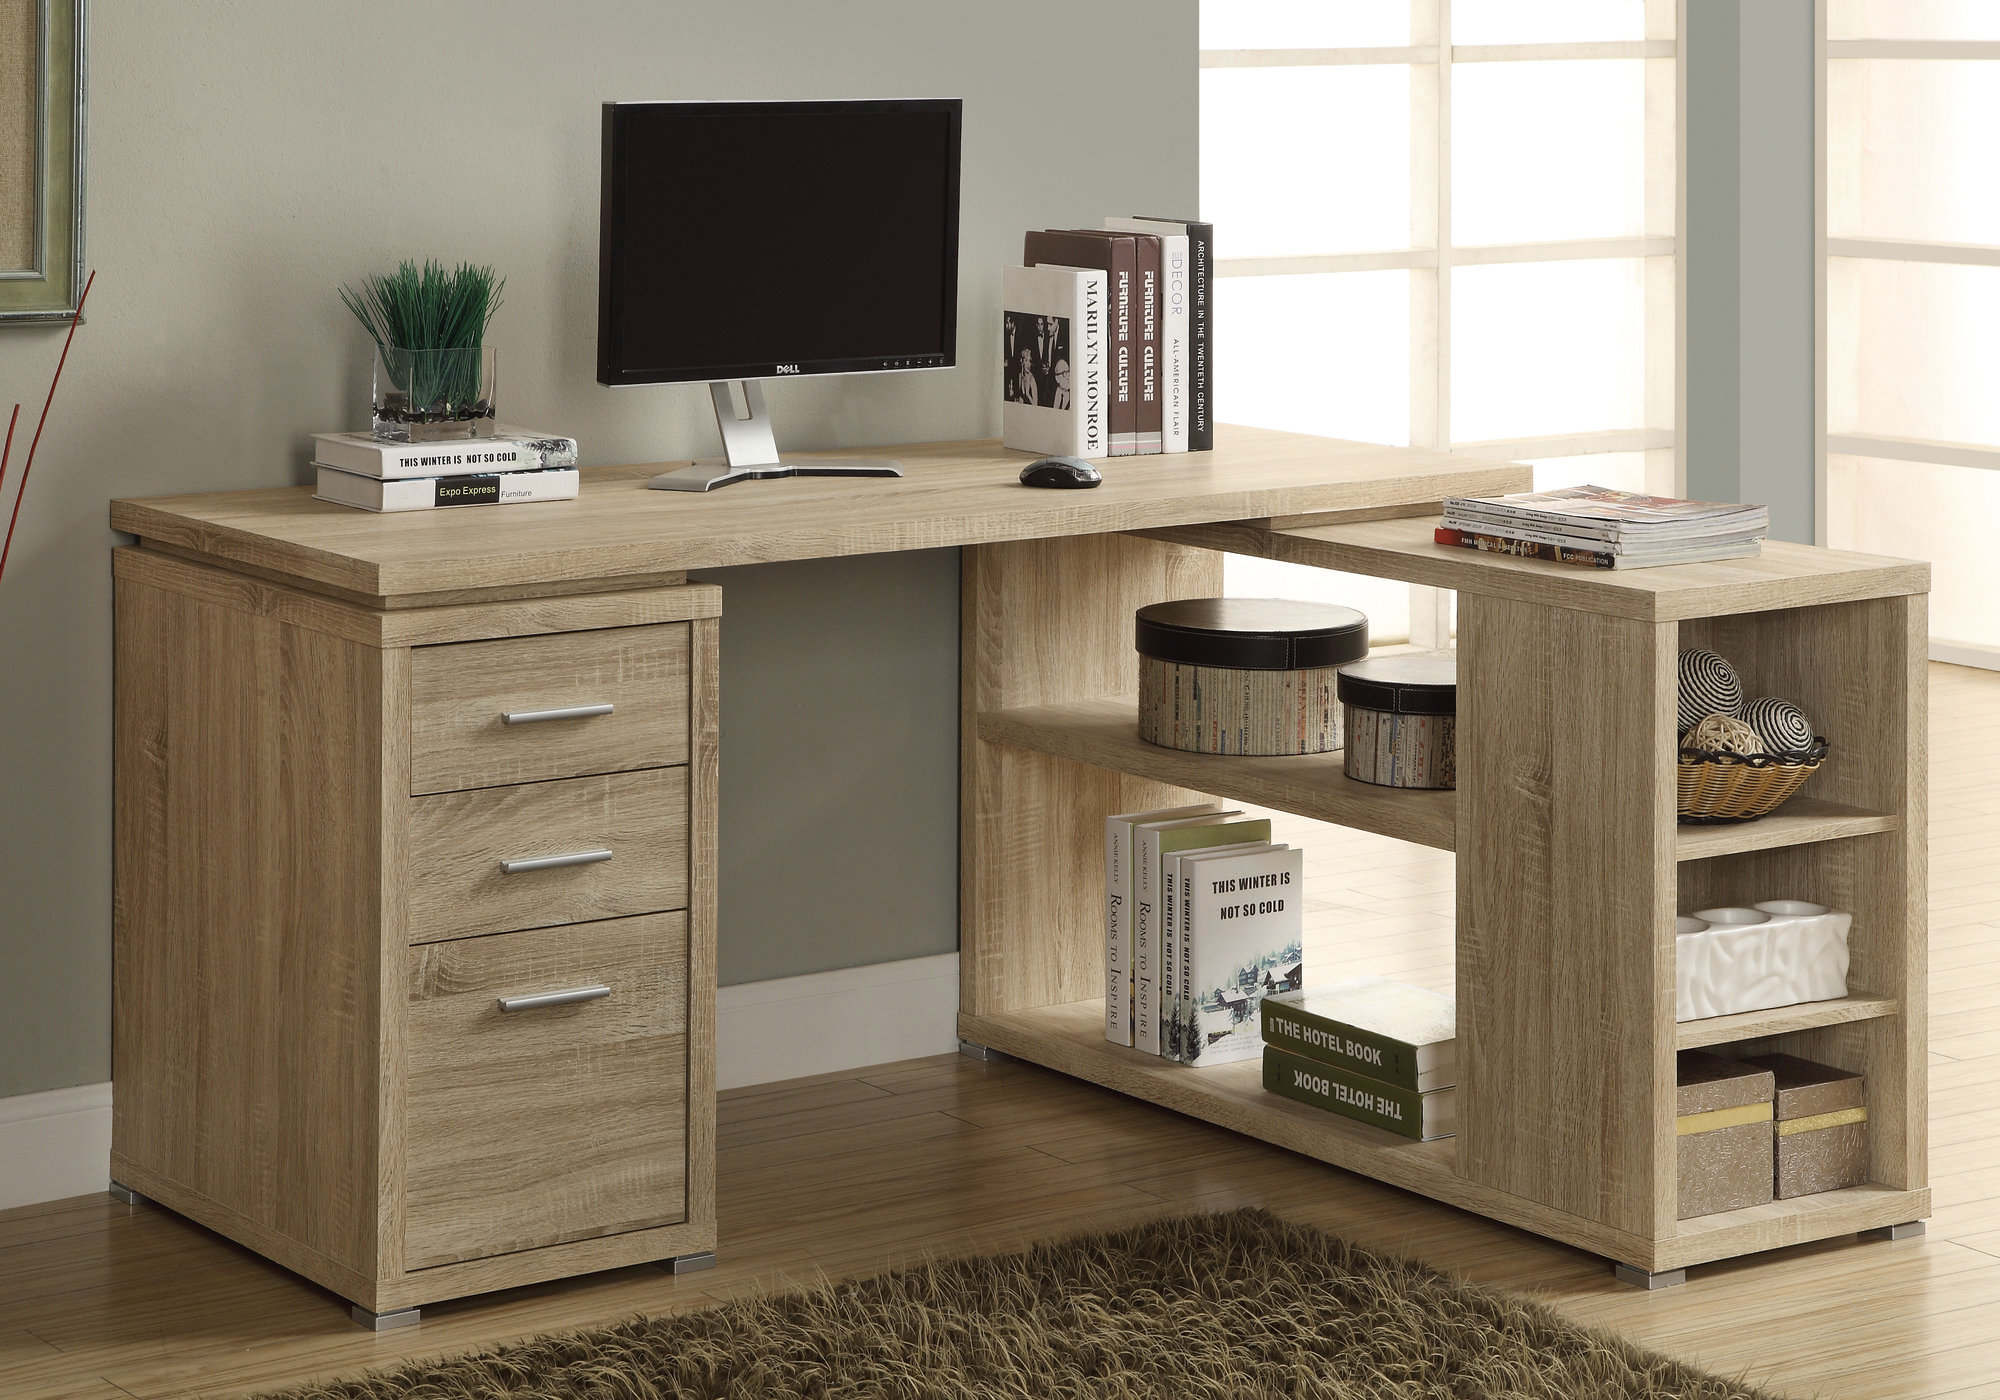 60 White Corner Desk with Storage by Monarch 